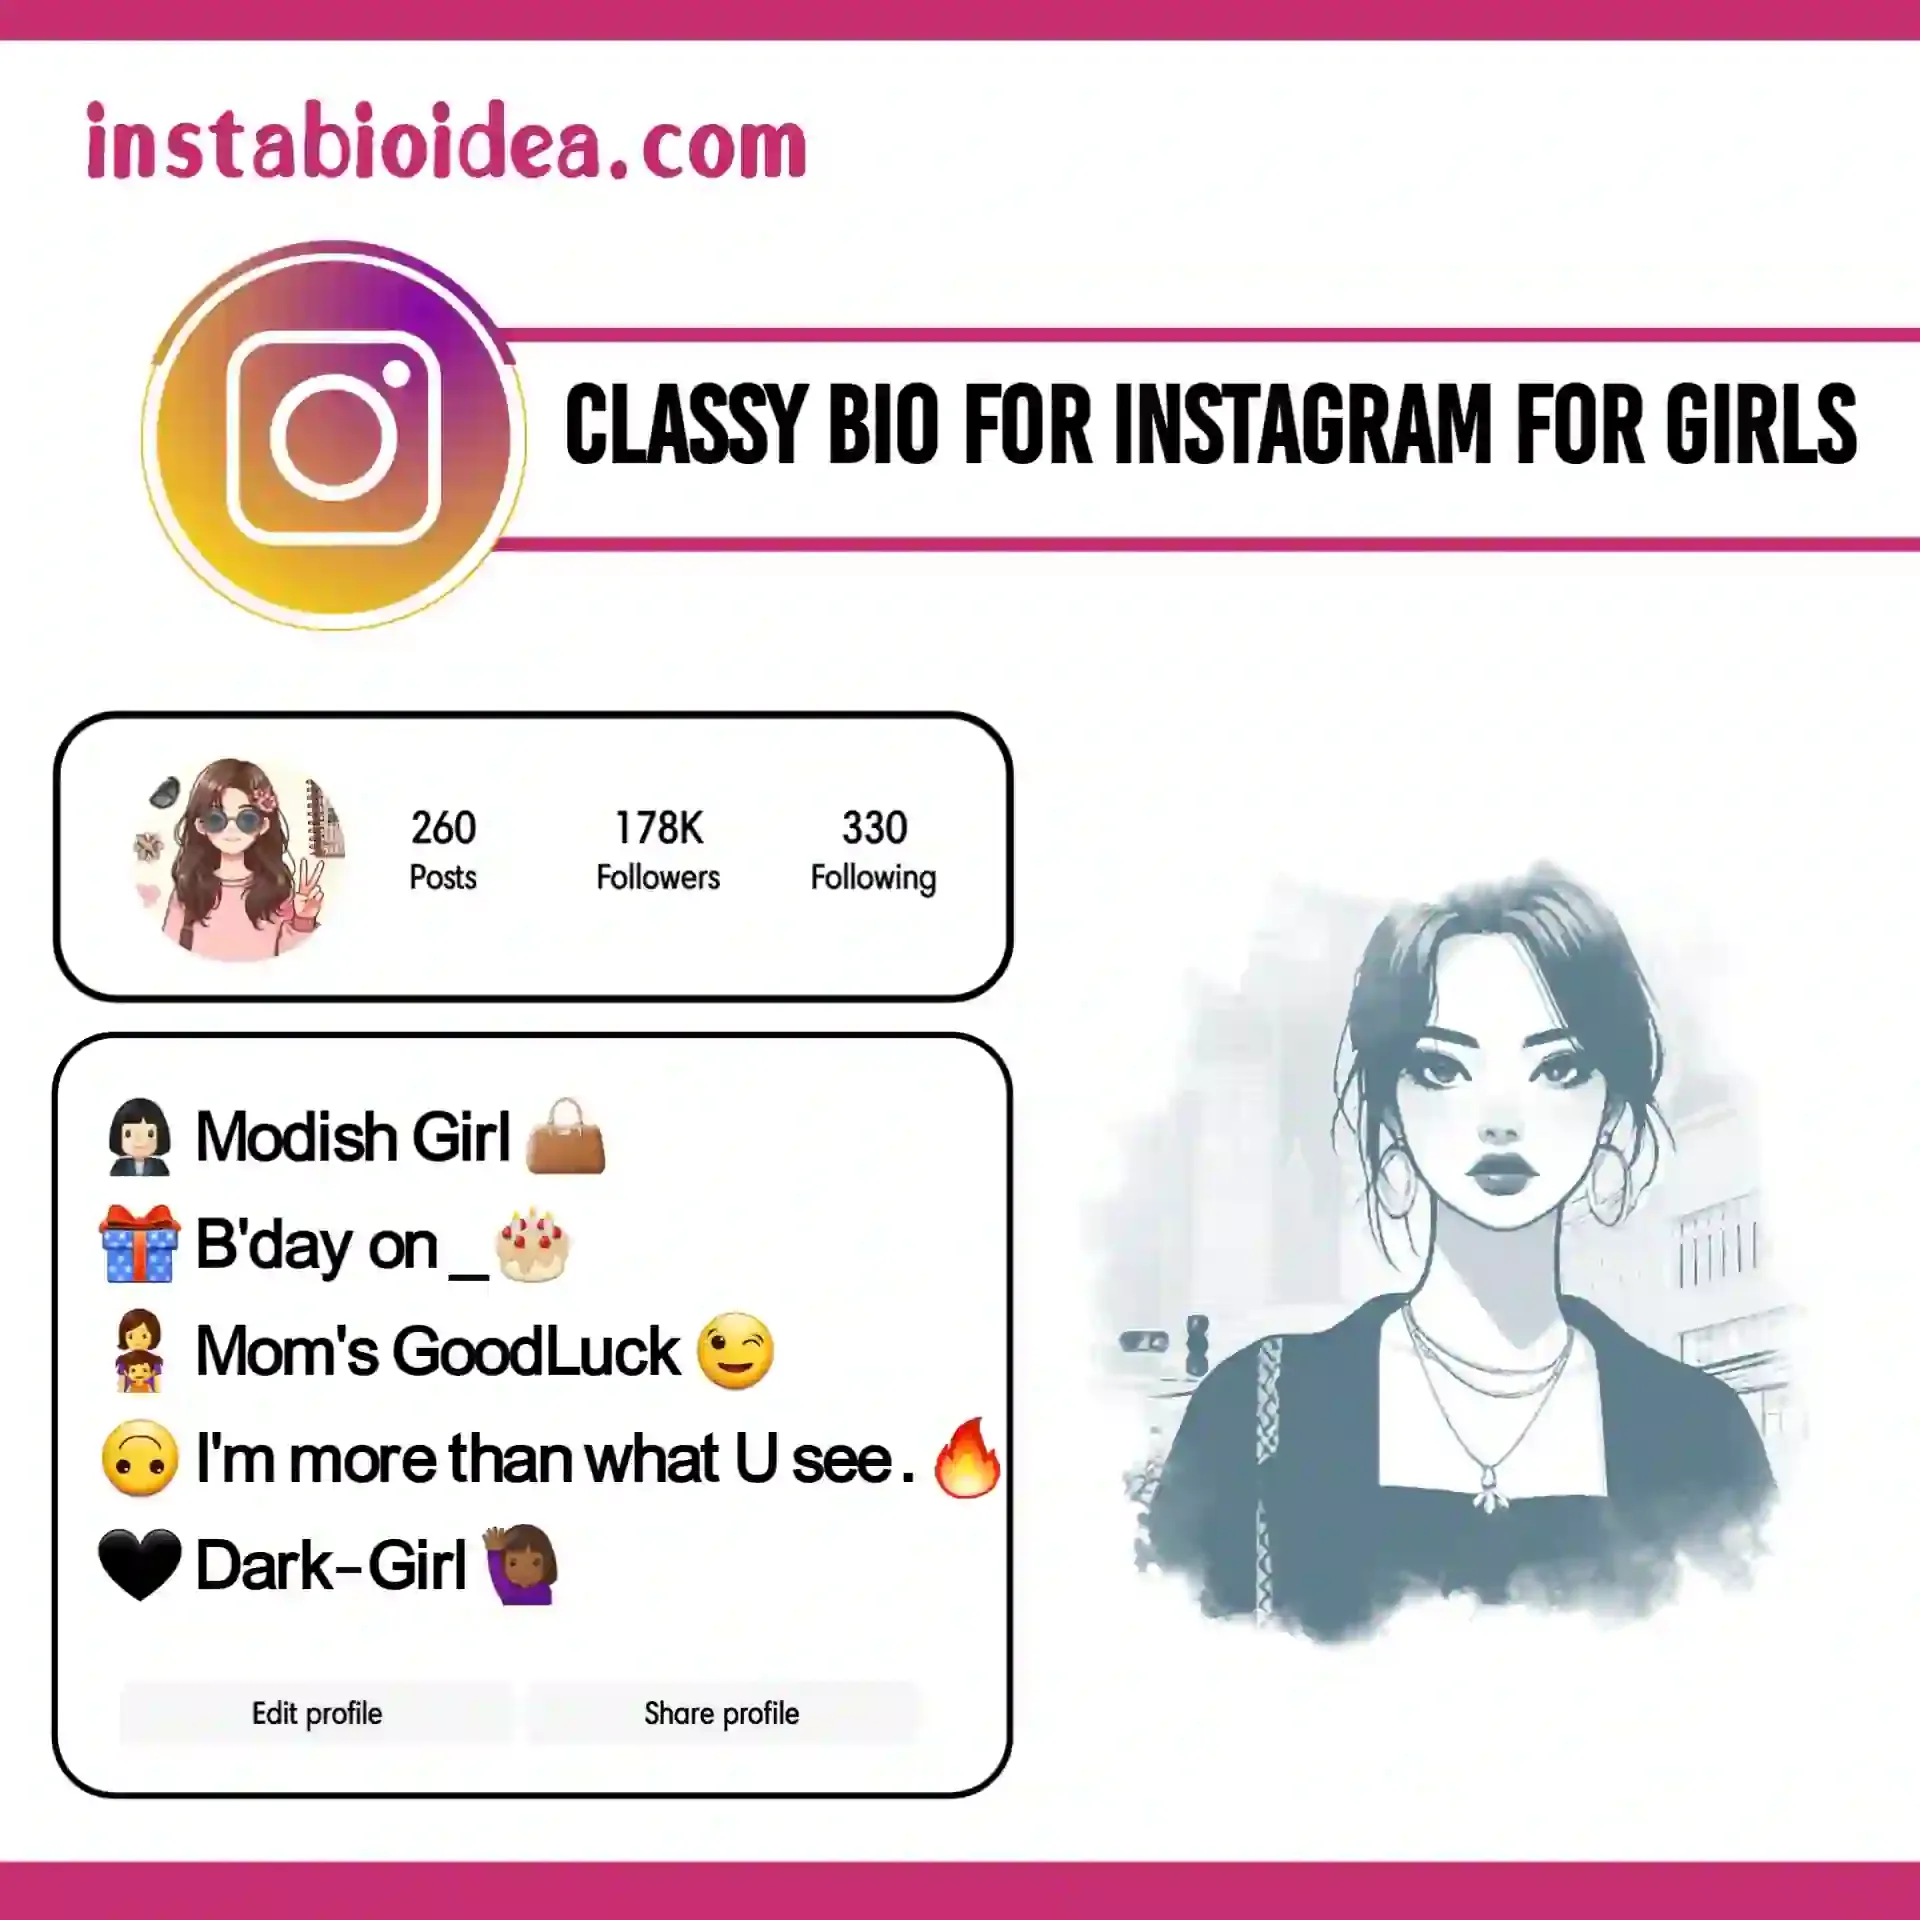 classy bio for instagram for girls image